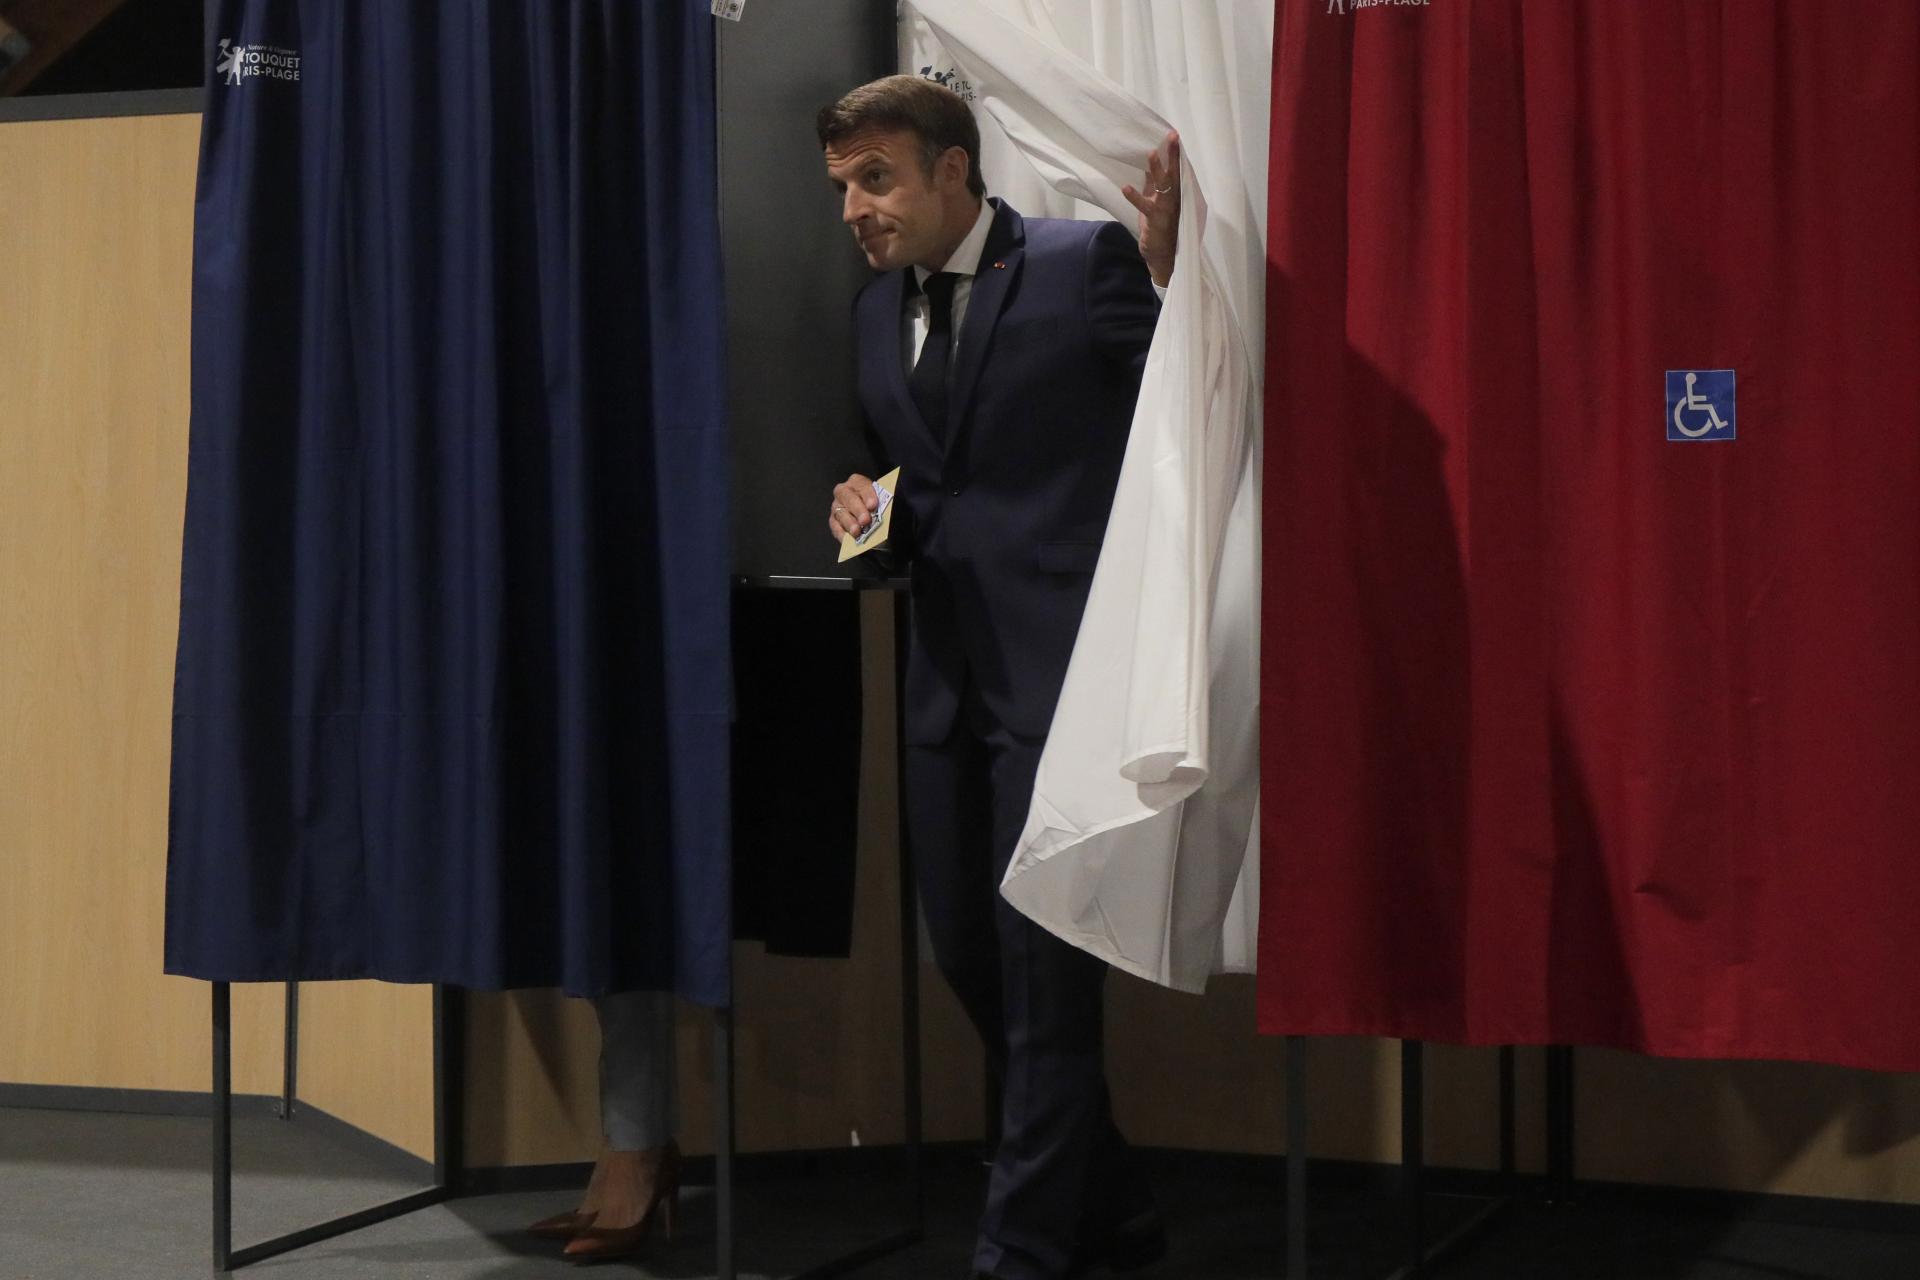 Politologue : La France n’est pas habituée aux compromis.  Macron a commis trois erreurs essentielles